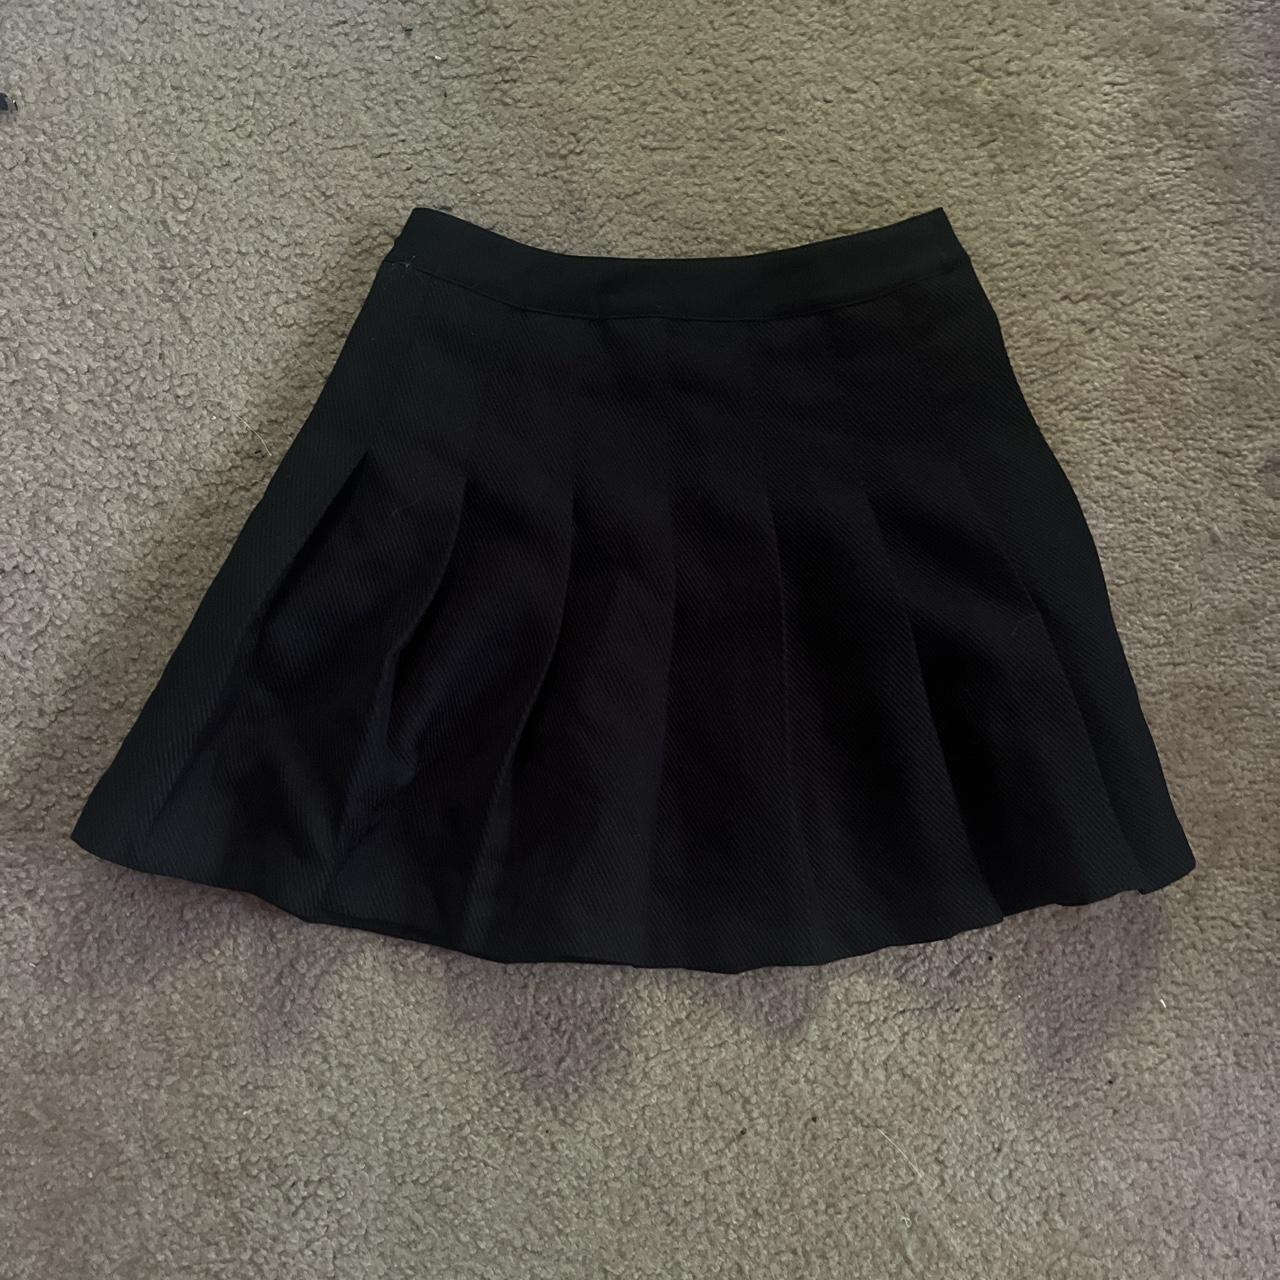 H&M Women's Black Skirt | Depop